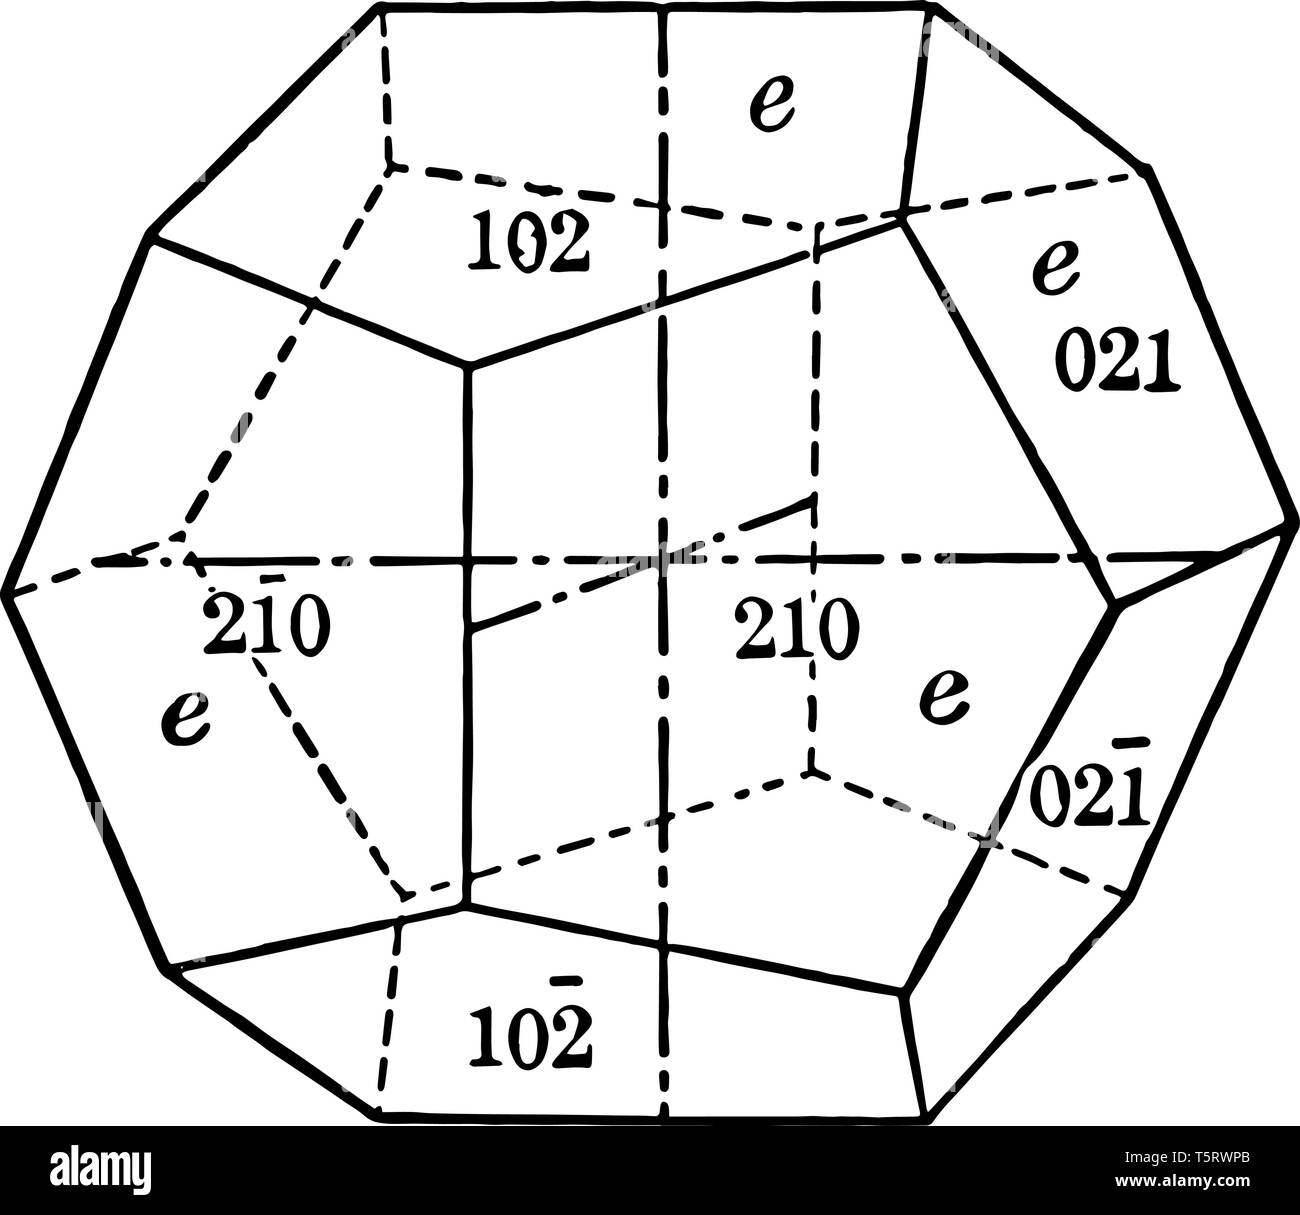 Questa forma è costituito da dodici facce di forma pentagonale, ciascuno di questi assi si intersecano, vintage disegno della linea di incisione o illustrazione. Illustrazione Vettoriale